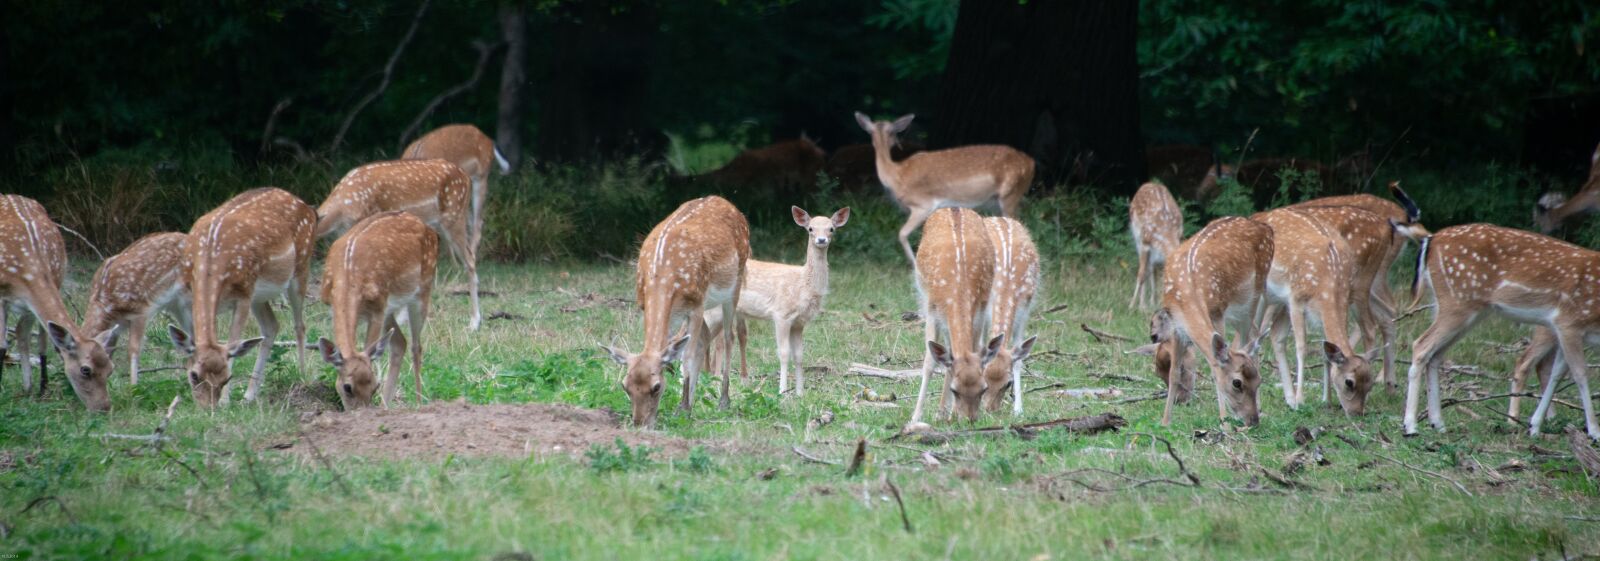 Nikon D800 sample photo. Deer, wild, group photography